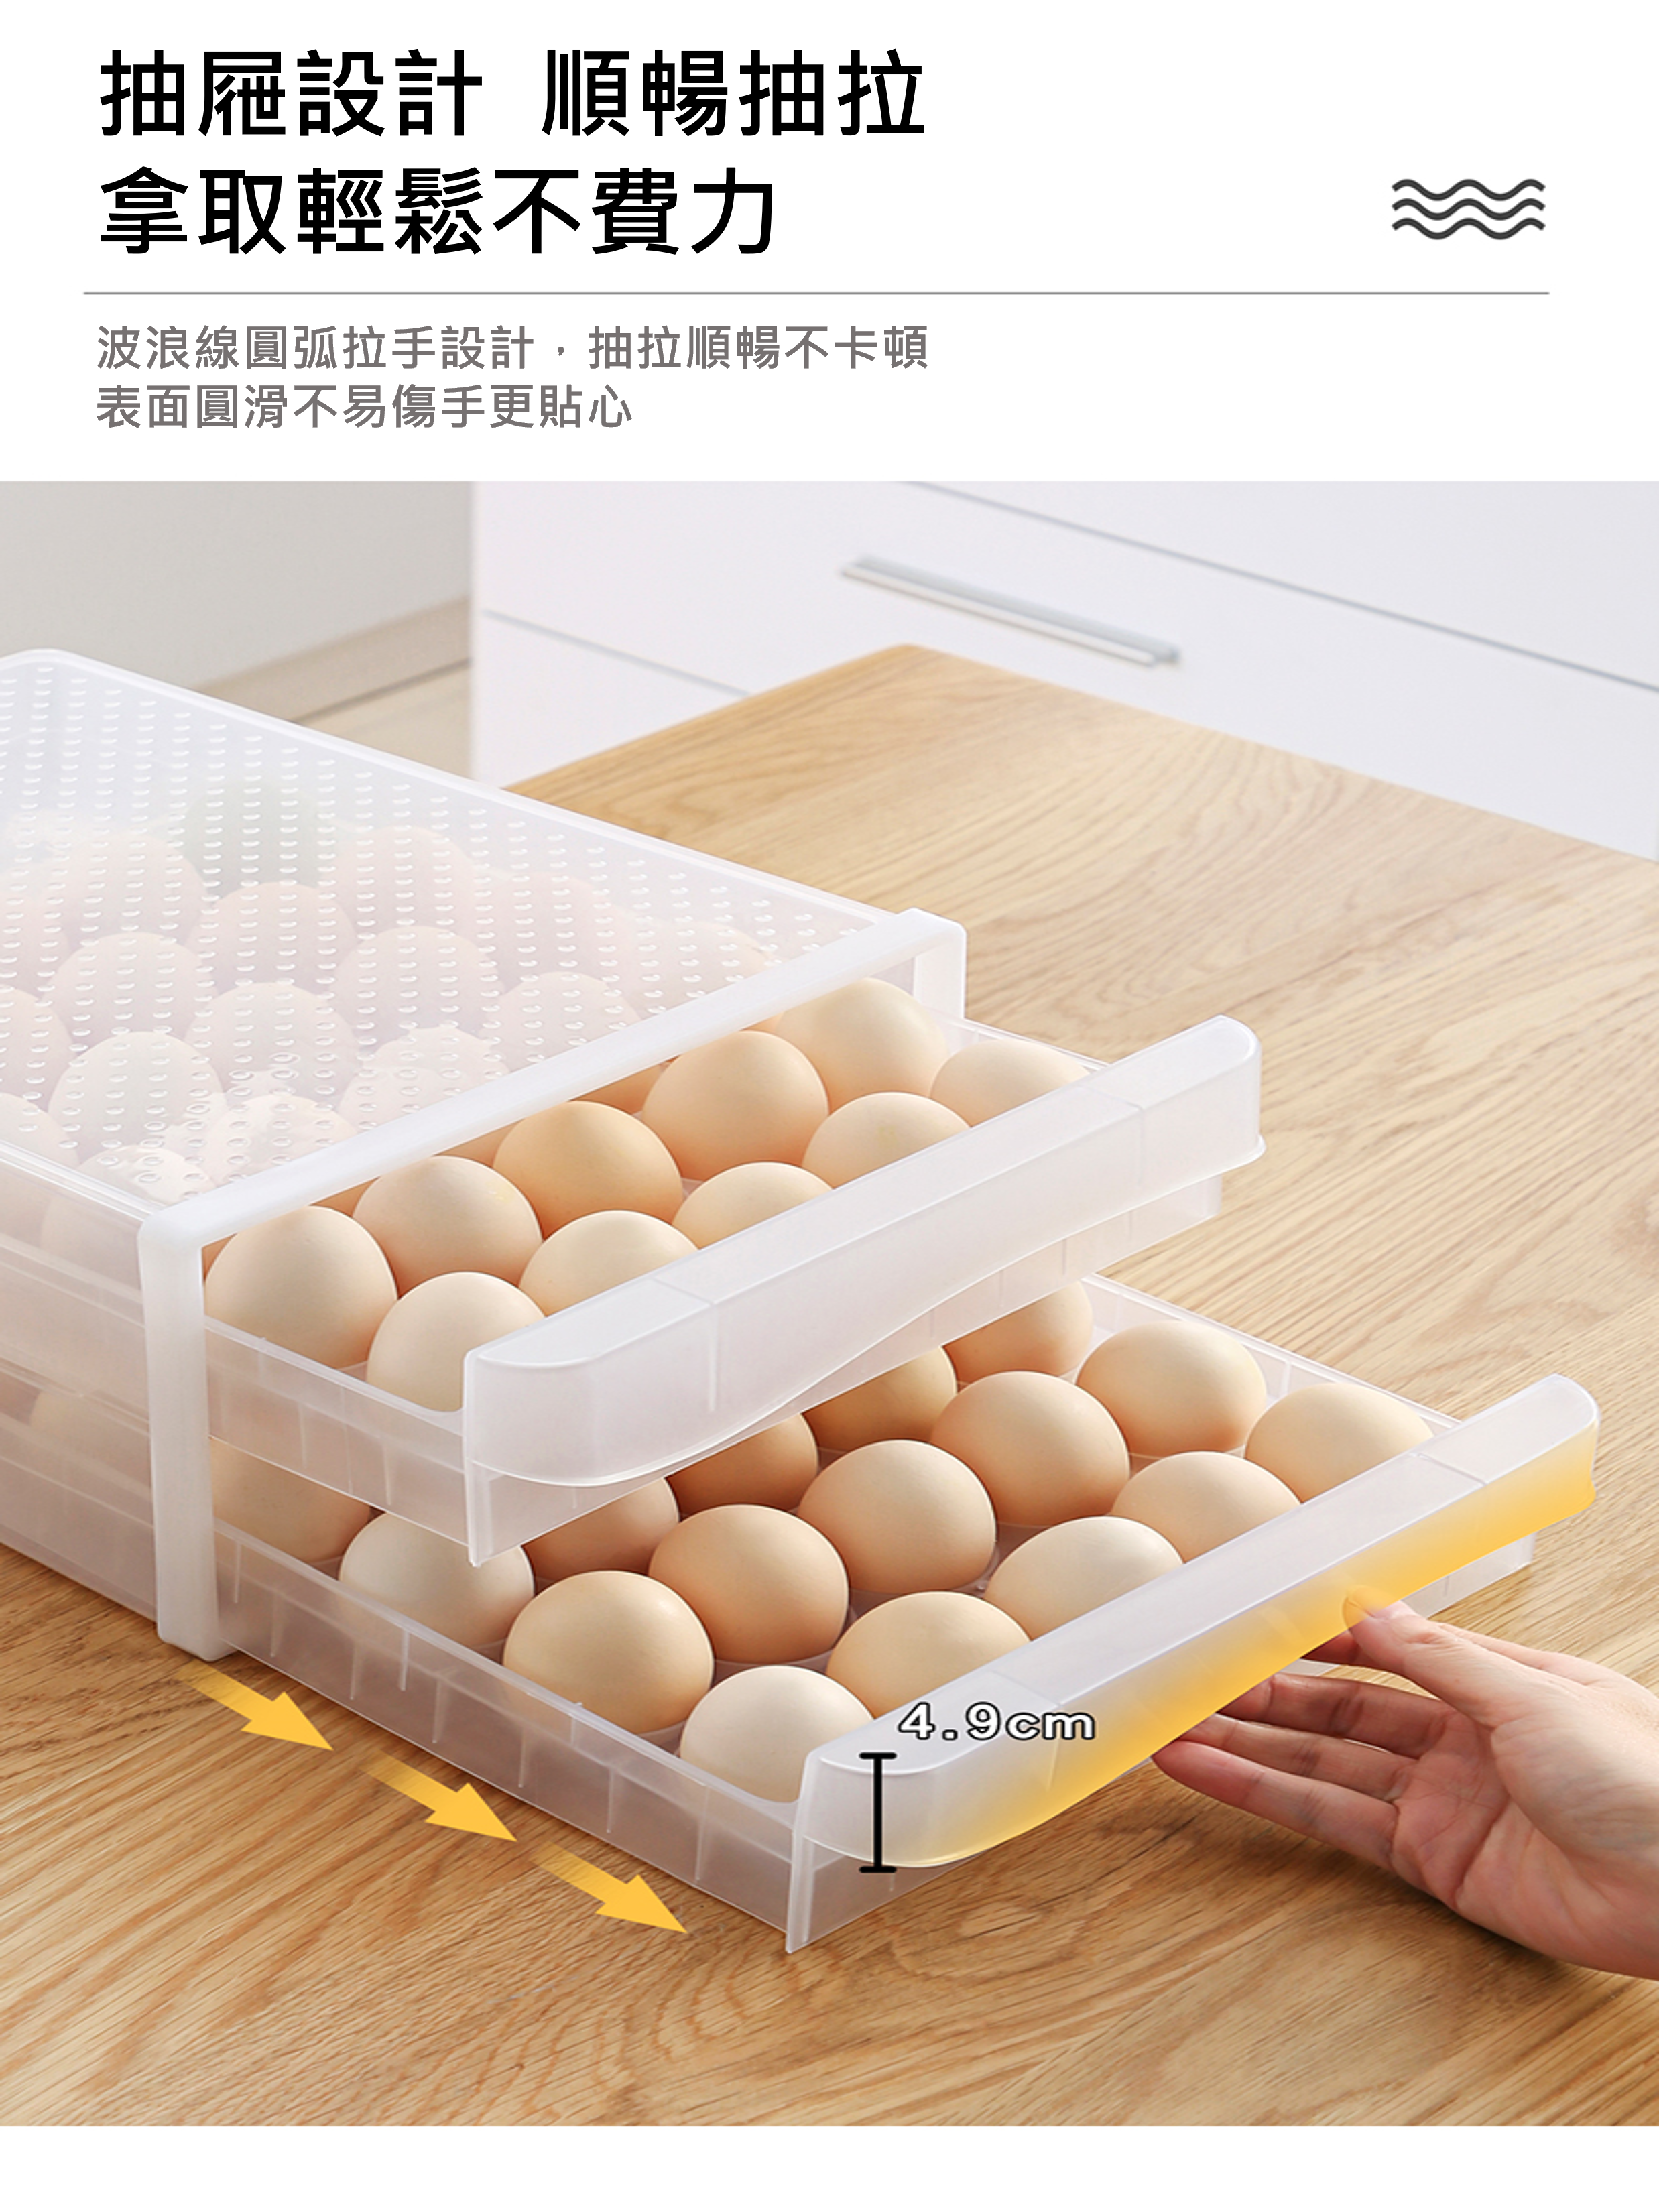 冰箱 放雞蛋 收納盒 抽屜式 雞蛋 雞蛋盒 專用 保鮮盒 蛋托 蛋盒 蛋架 托裝 神器 居家 家用 方便 穩固 多功能 多層